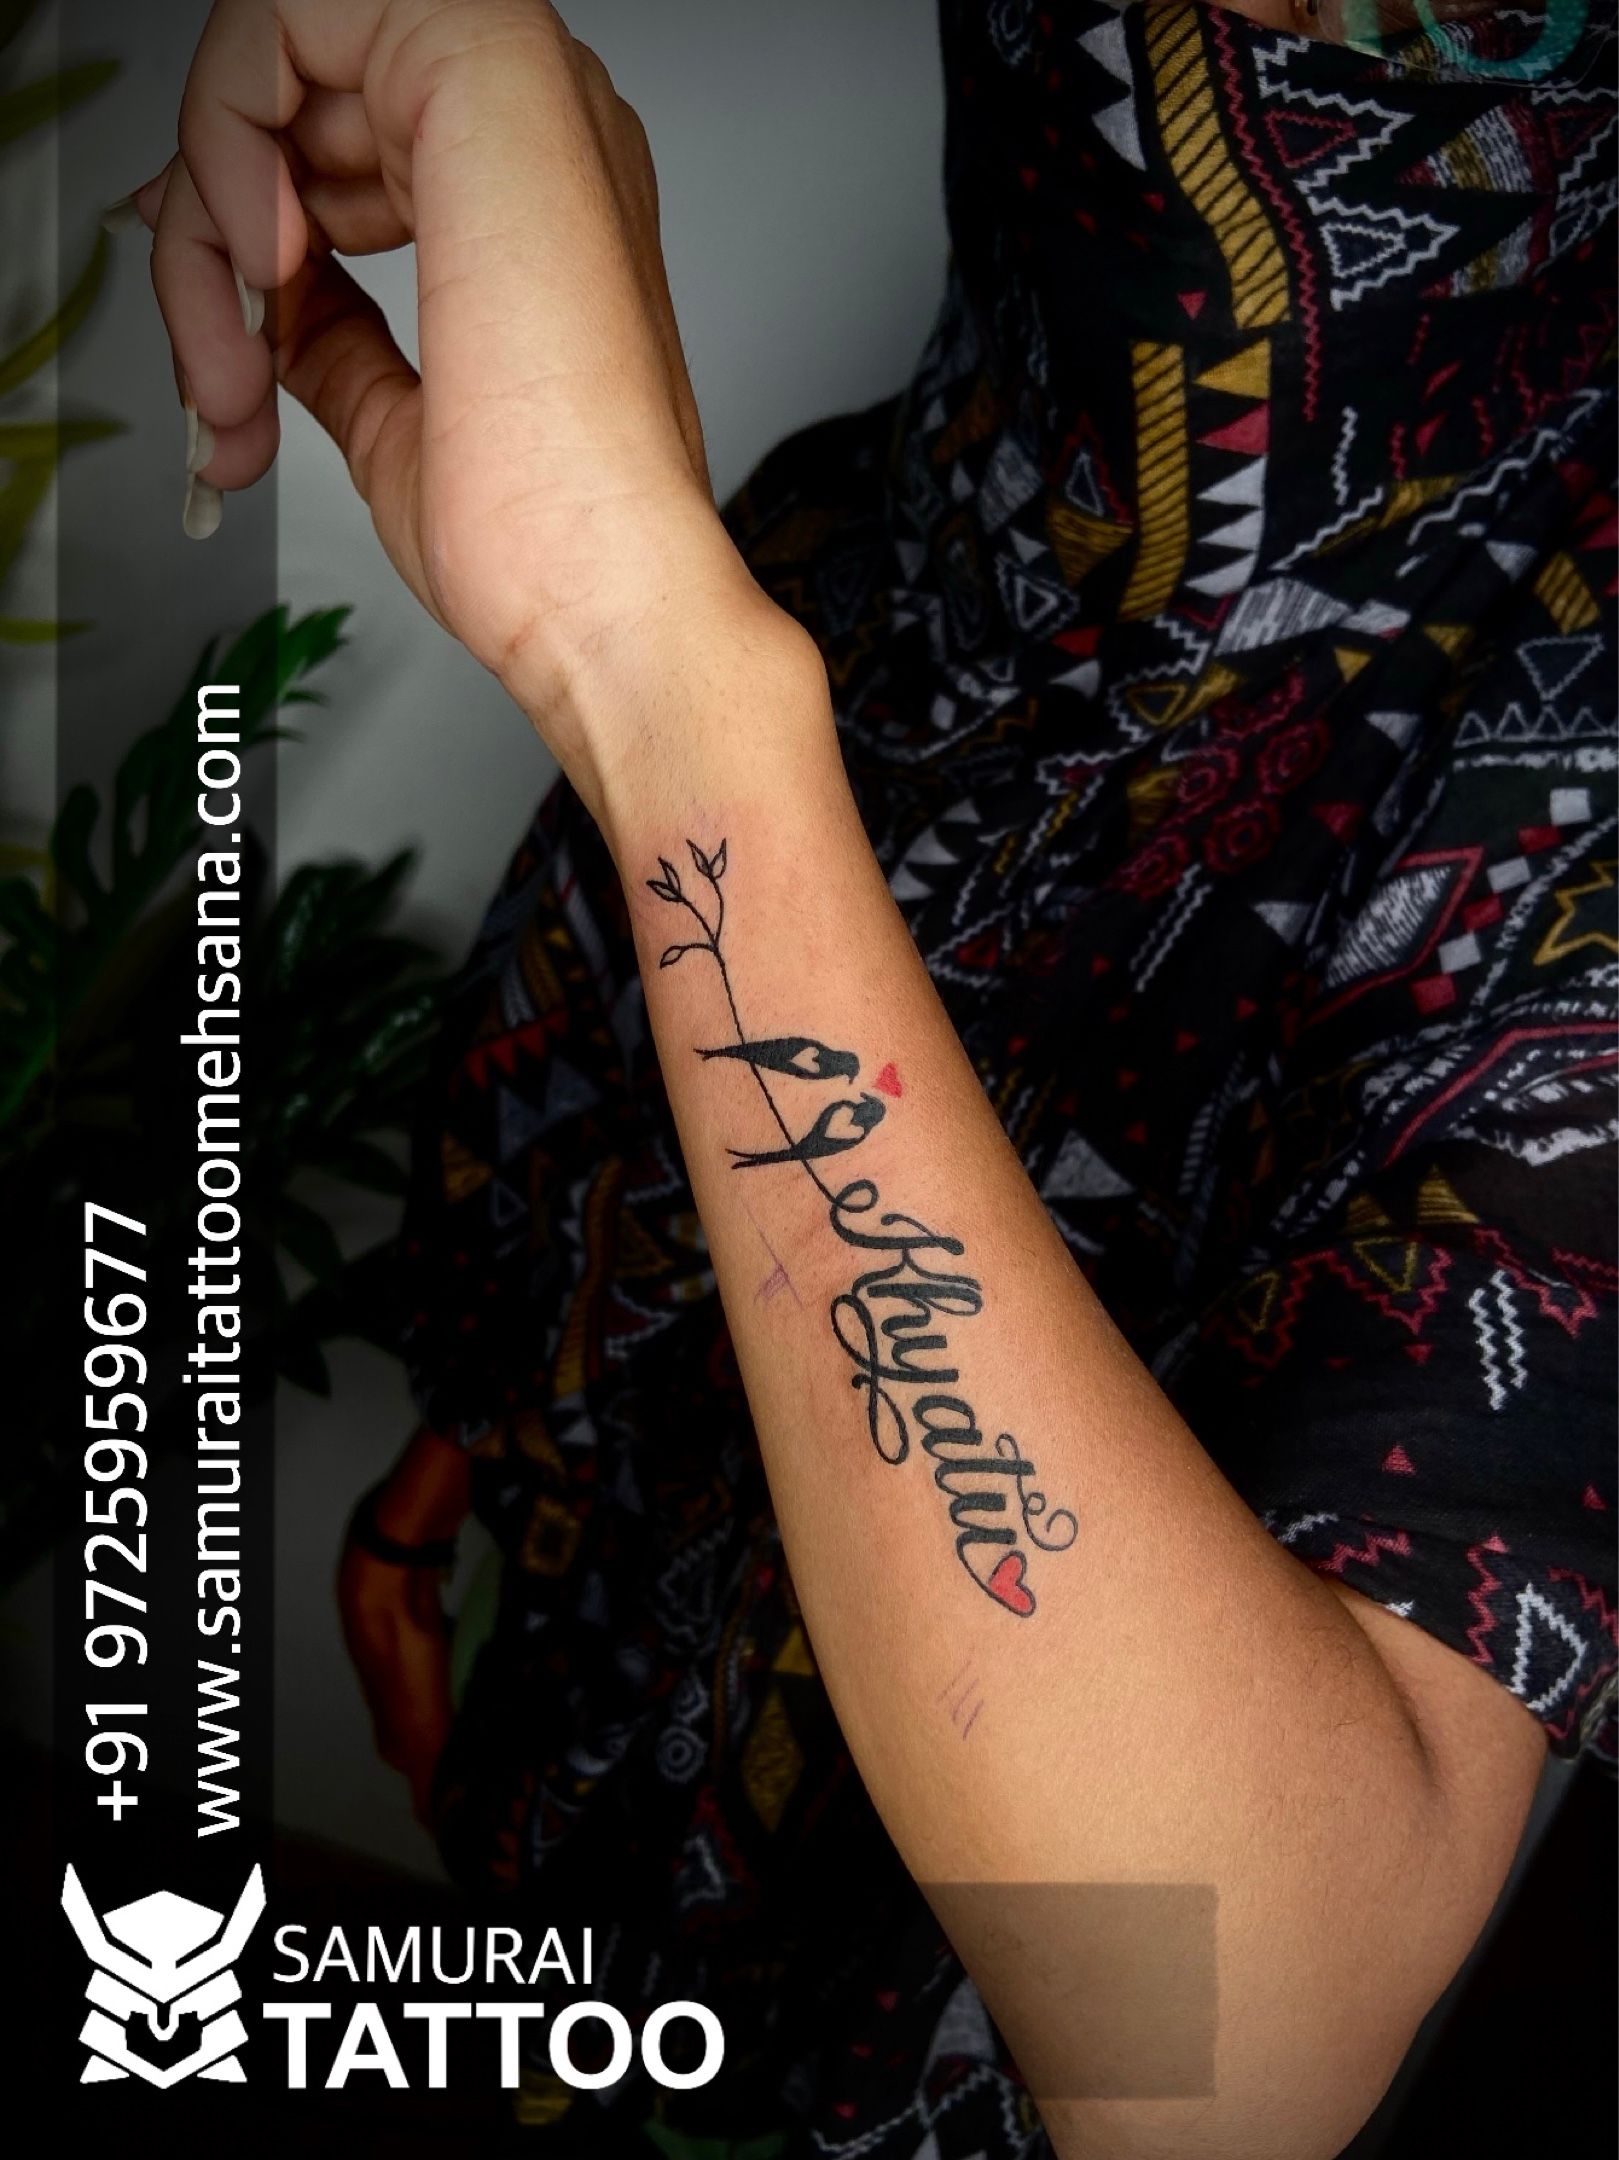 Sanket name tattoo | Name tattoo, Tattoos, Heart tattoos with names